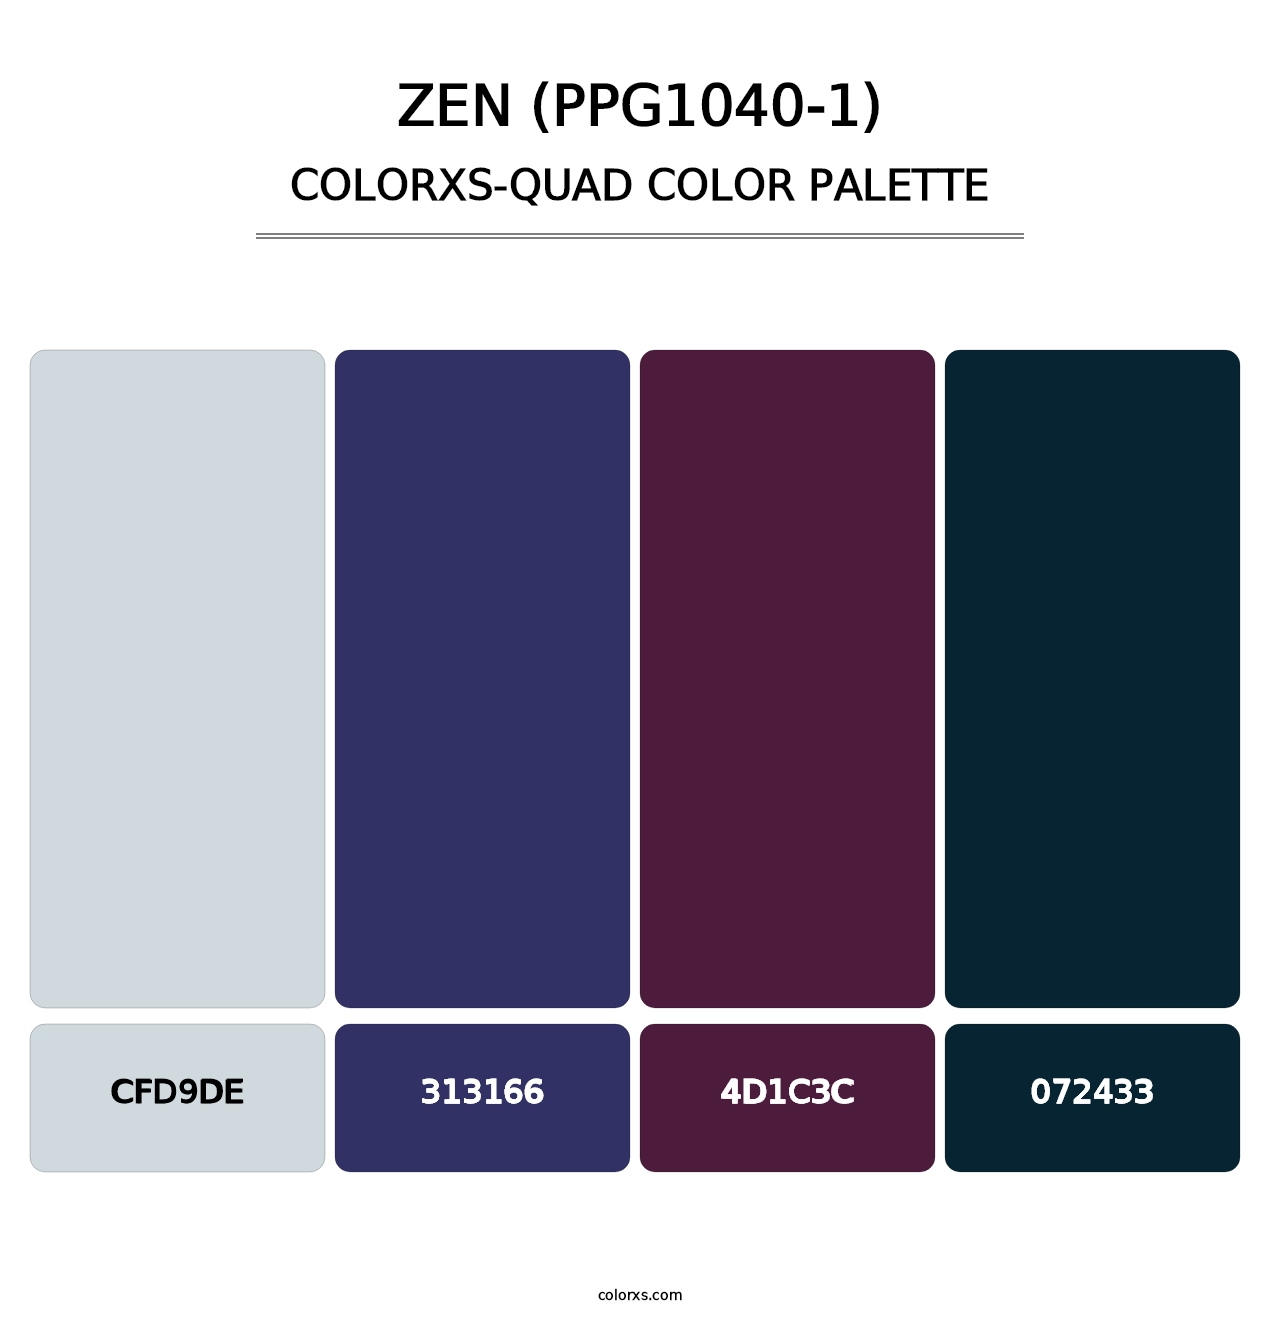 Zen (PPG1040-1) - Colorxs Quad Palette